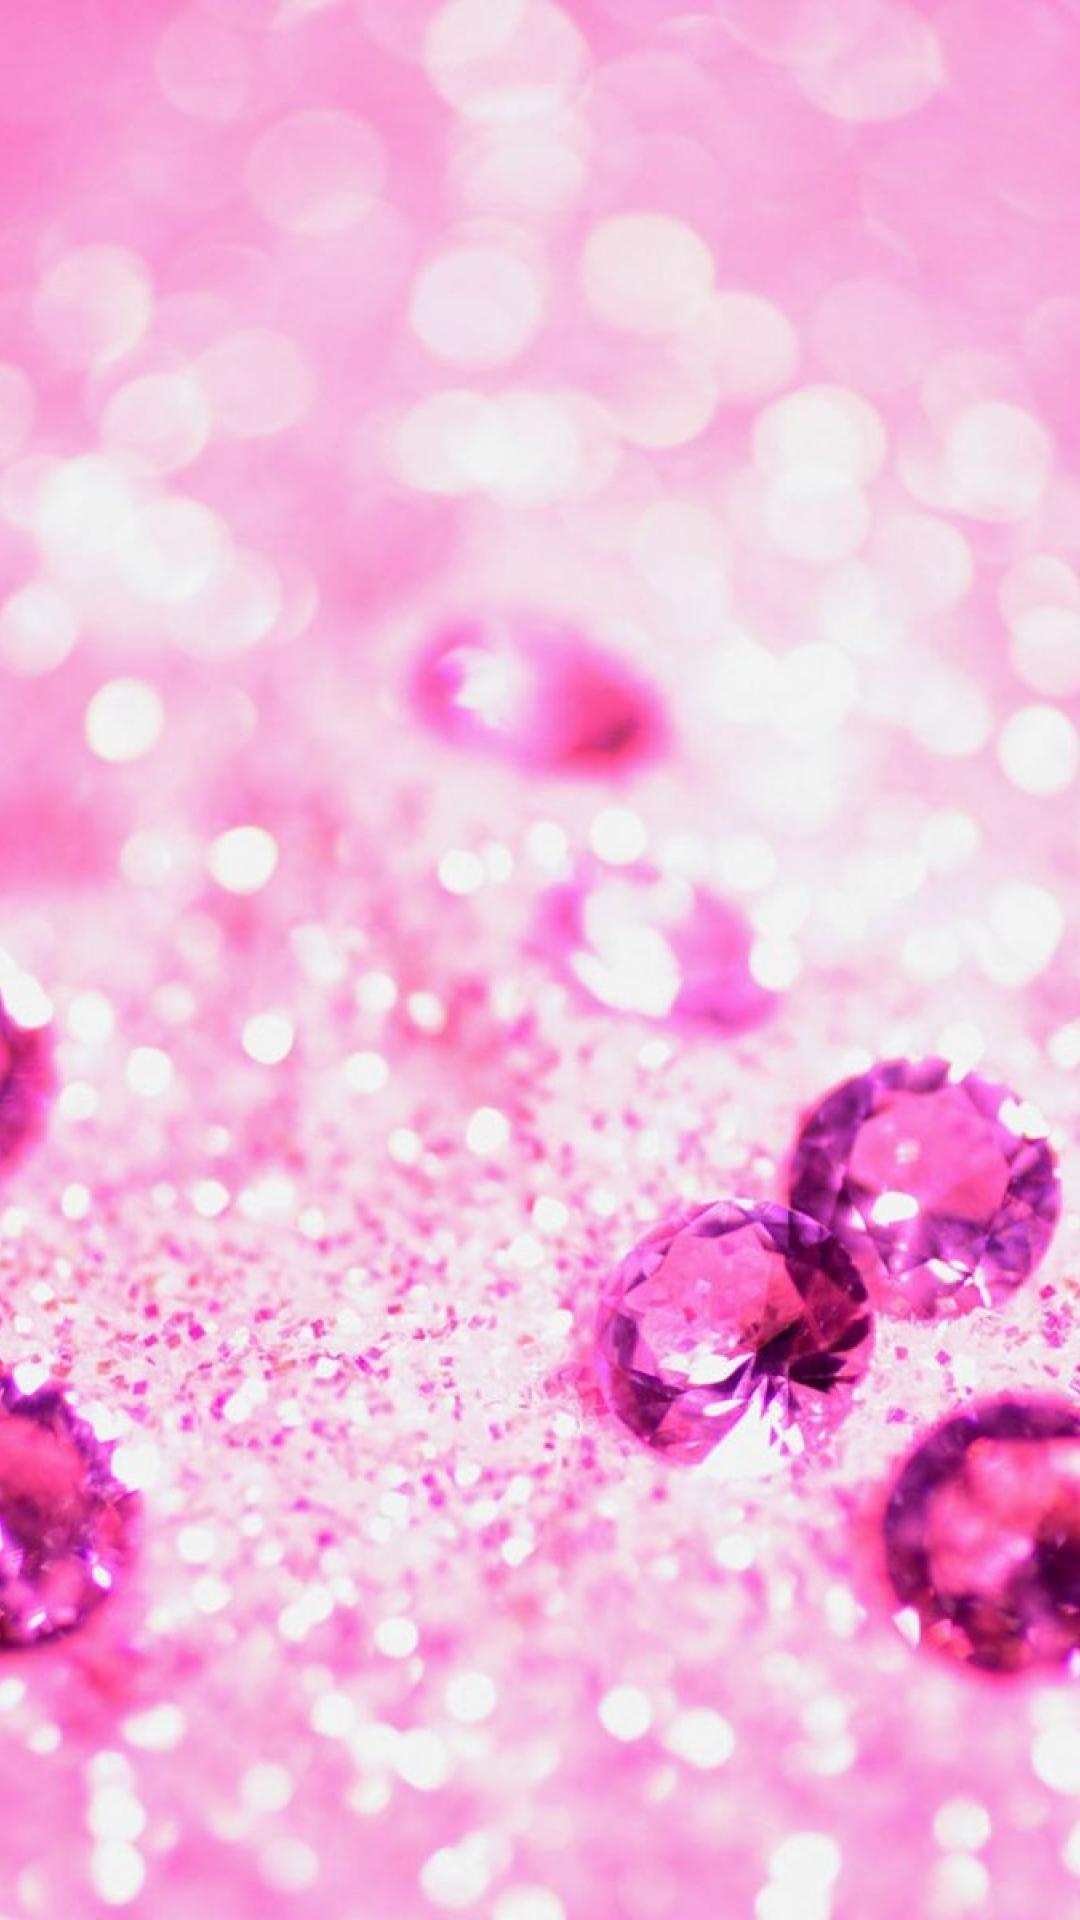 沢山のピンクの宝石 ガーリーなキラキラiphone壁紙 Iphone11